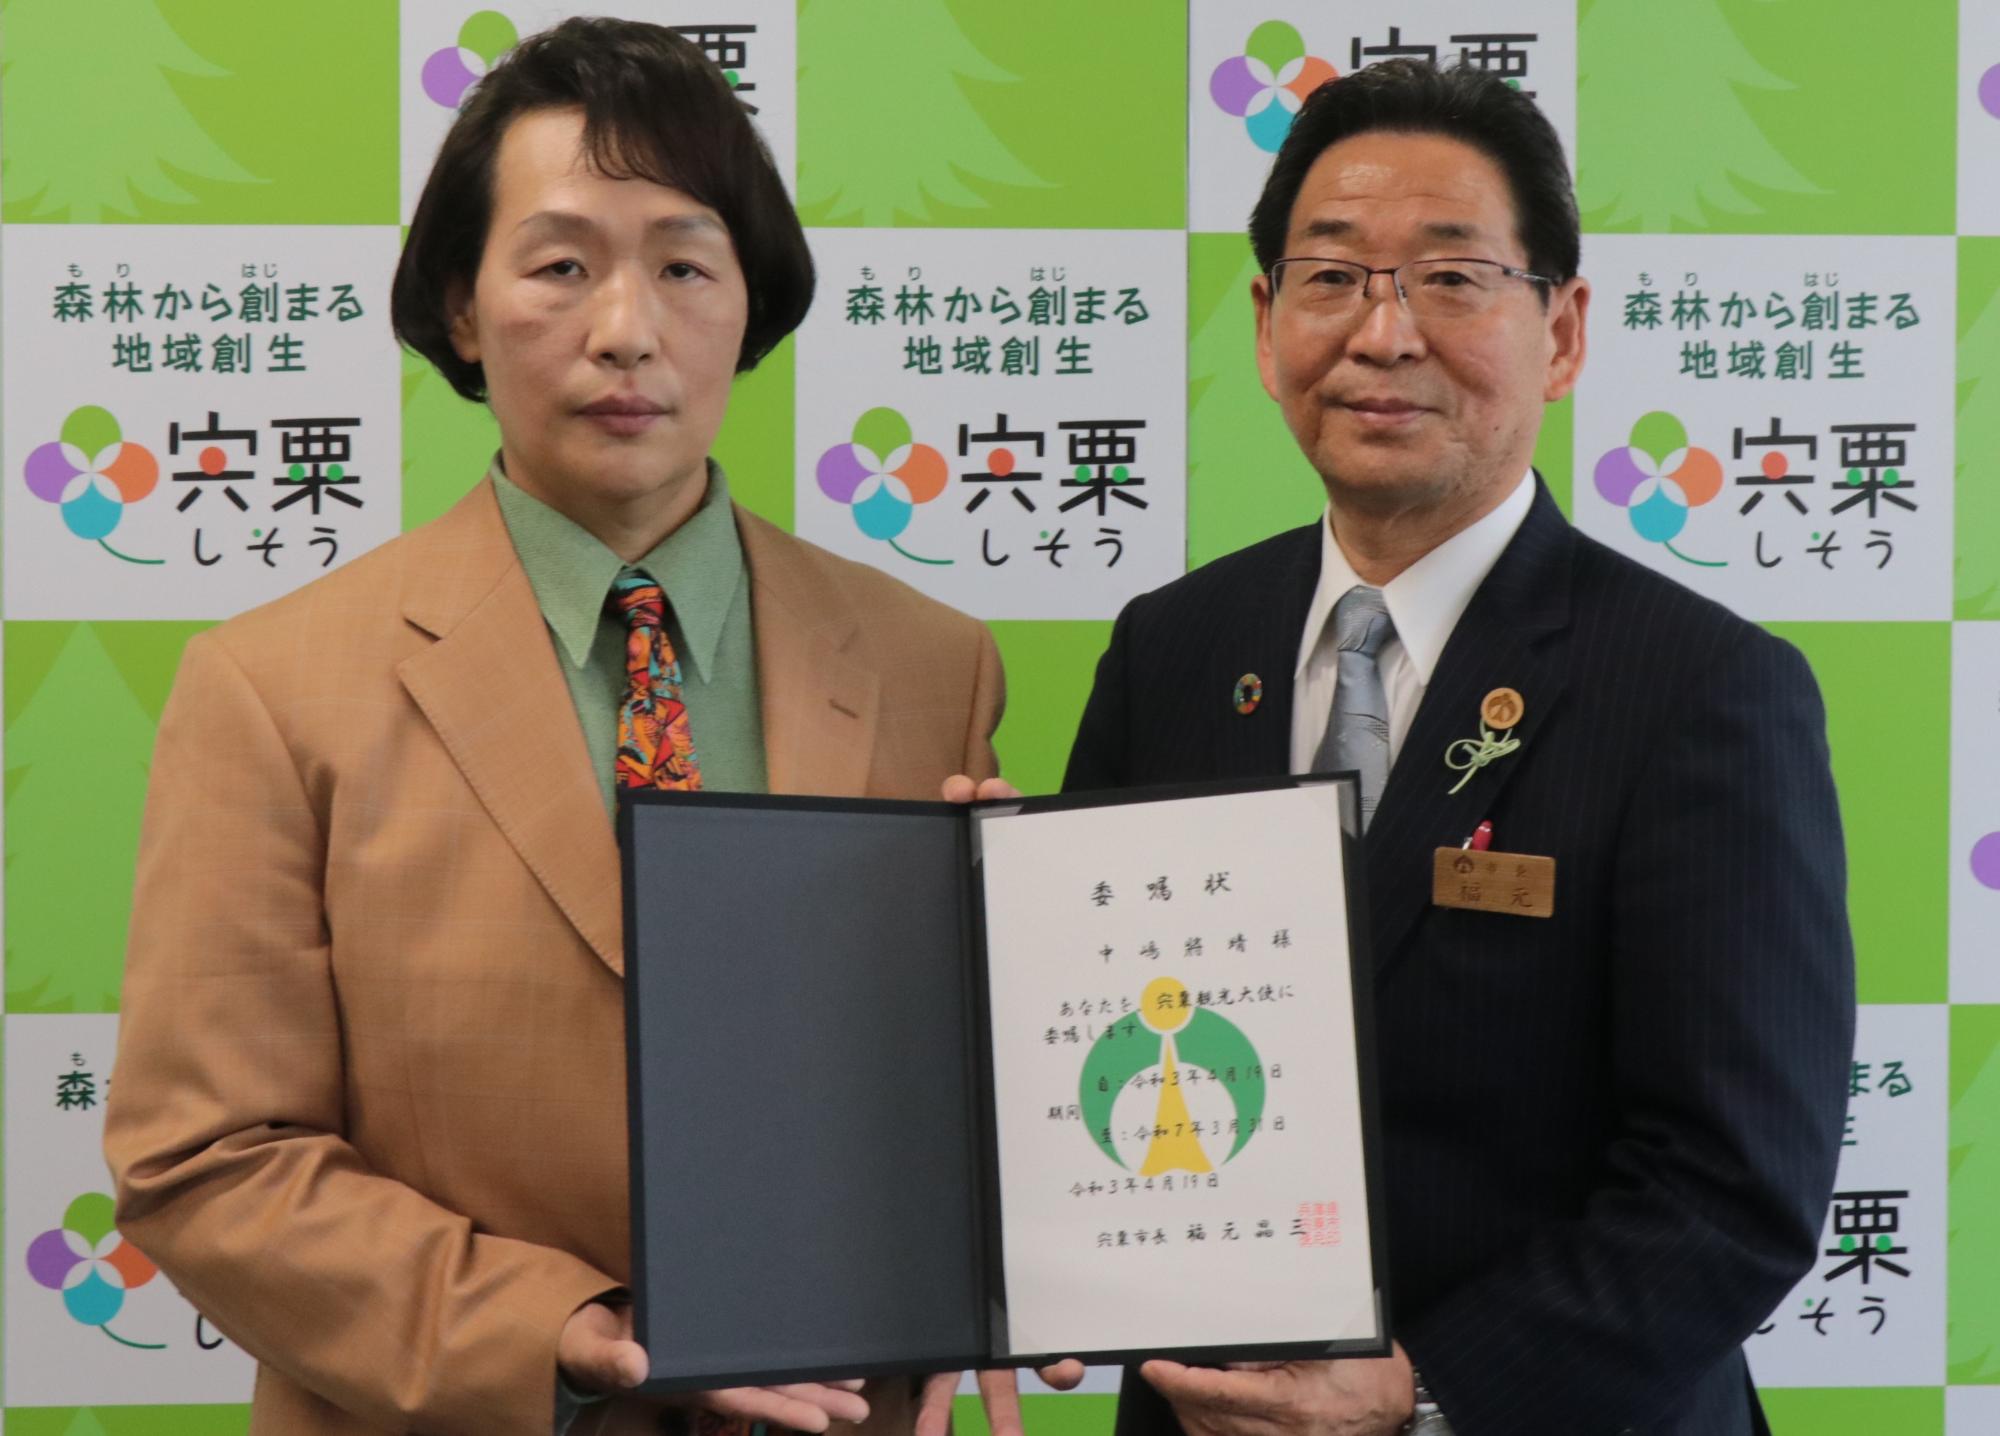 観光大使委嘱状を手にした左観光大使中嶋將晴さん右宍粟市長の写真